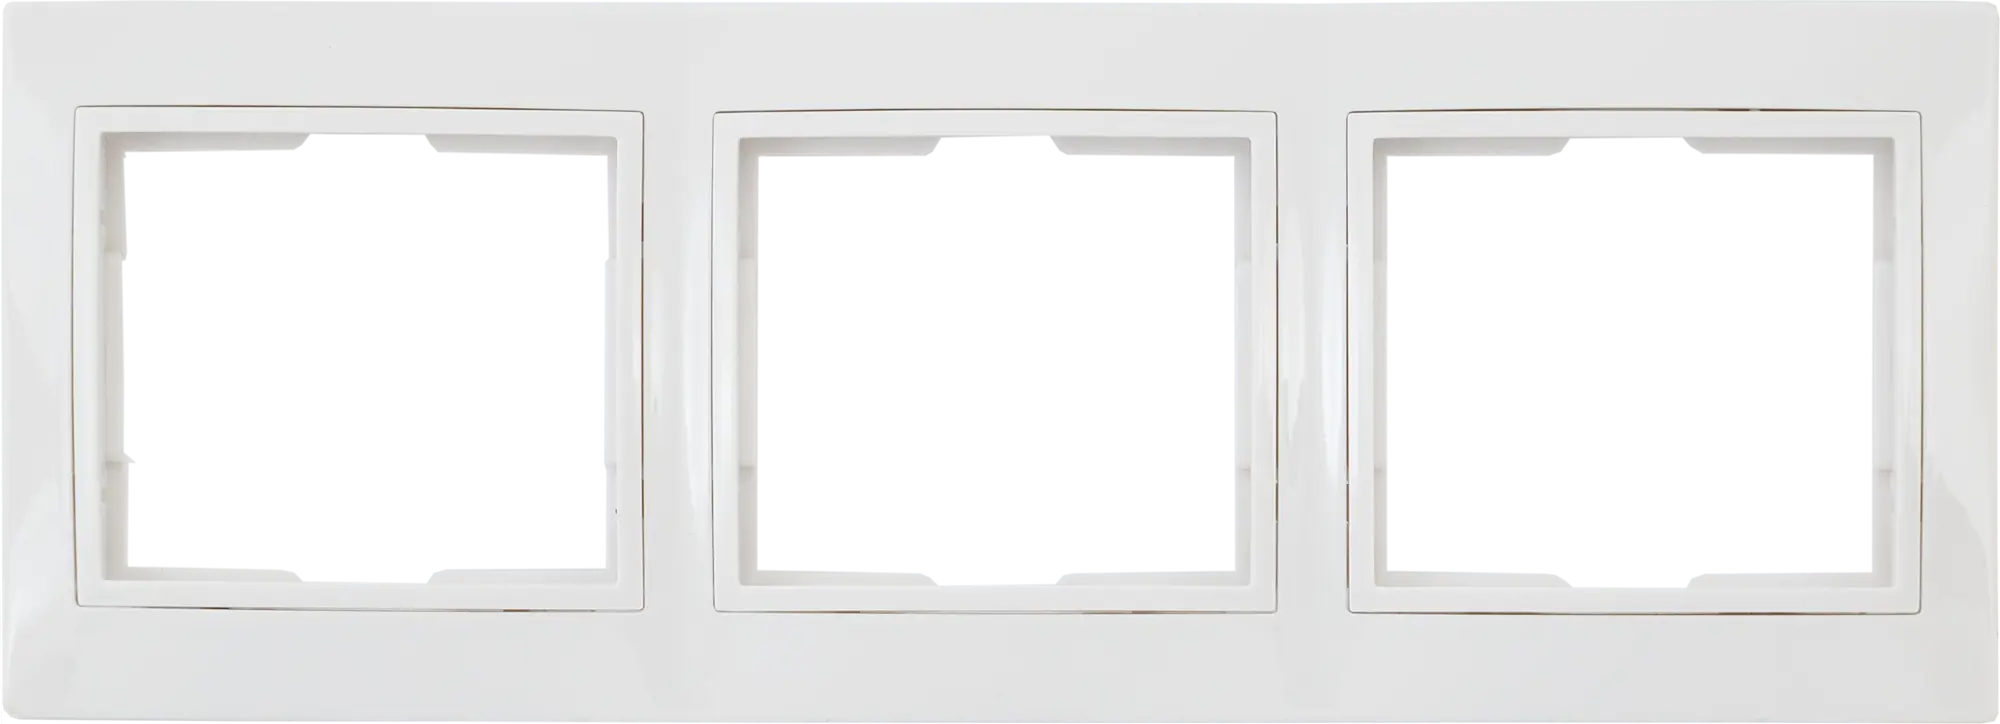 Рамка для розеток и выключателей горизонтальная Таймыр 3 поста, цвет белый горизонтальная бухгалтерская книга учета attache